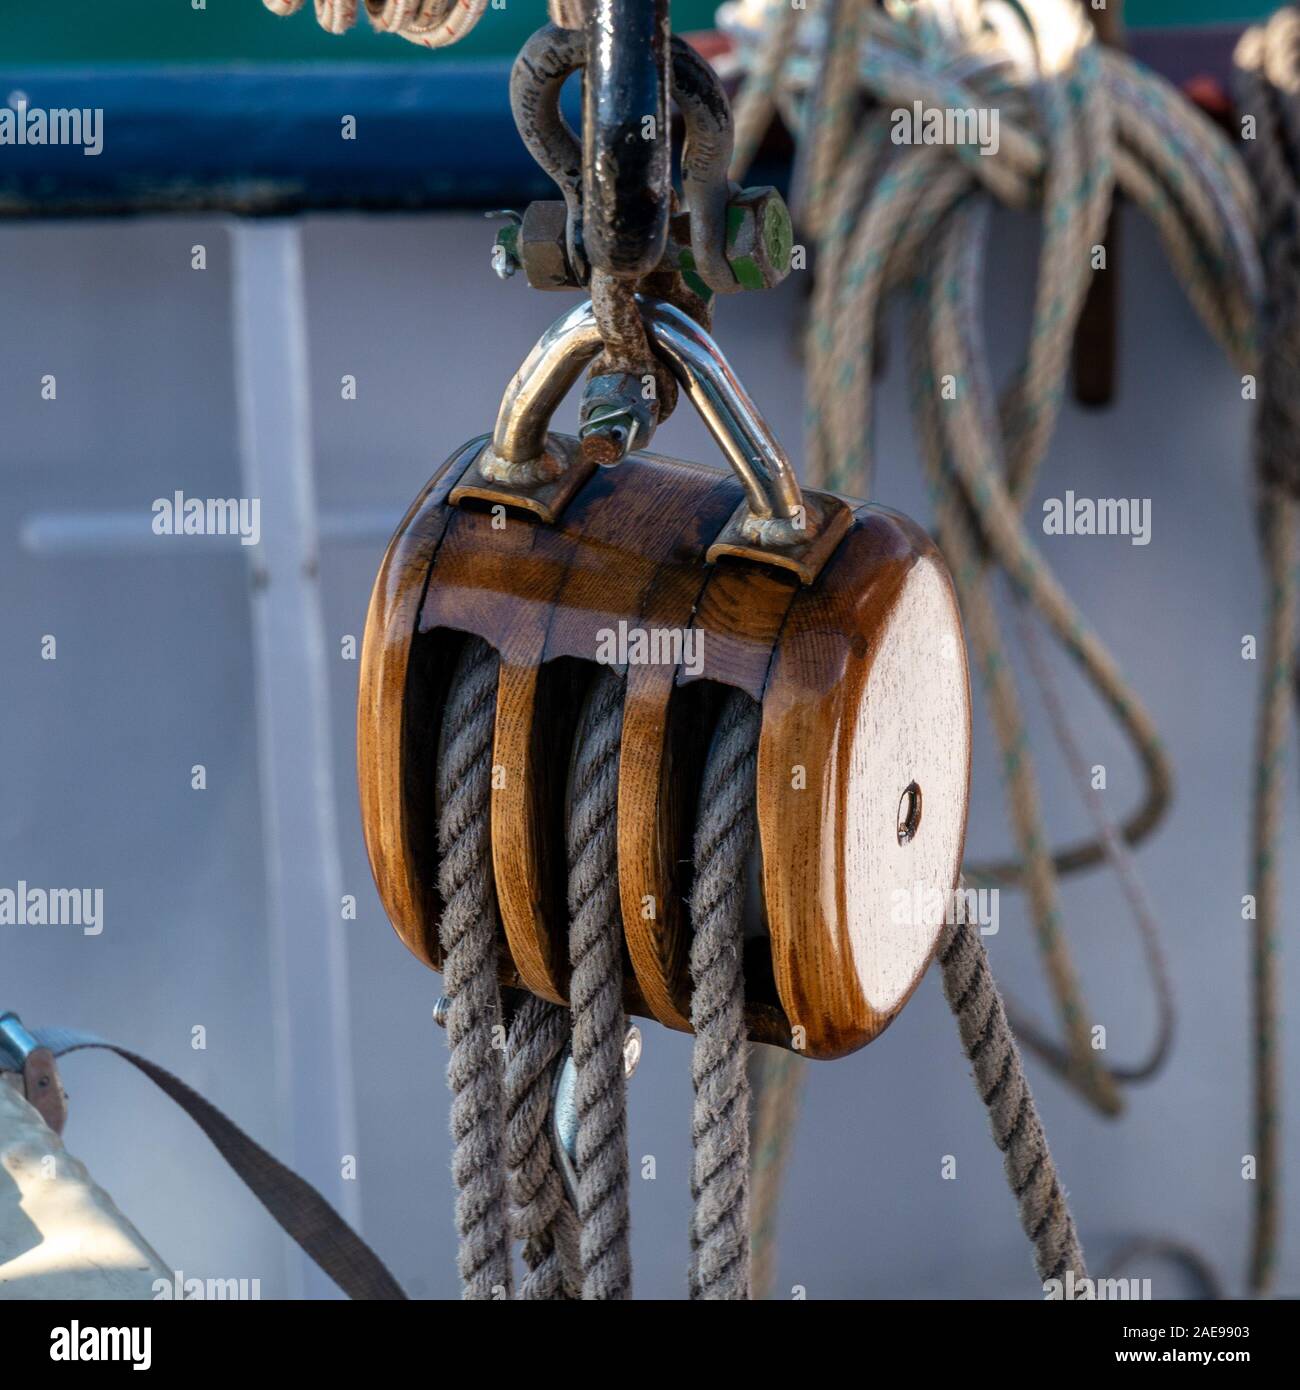 Nahaufnahme der hölzernen Block und Spanngeschirr Rigging von Flying Dutchman Schoner, ein traditionelles großes Segelschiff, Colonsay, Schottland, Großbritannien Stockfoto